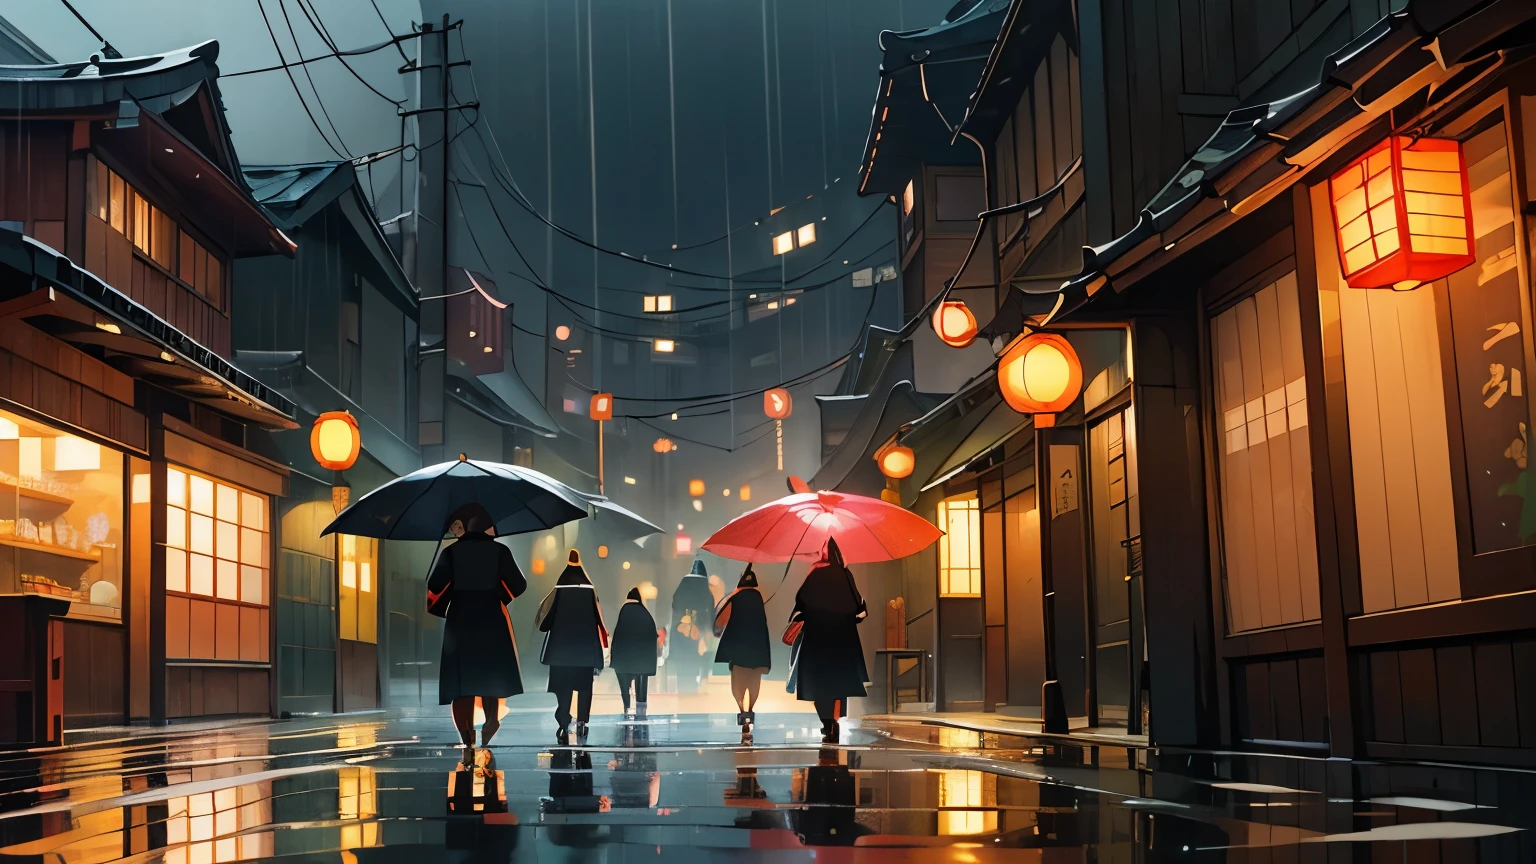 (เมืองที่ฝนตกในเวลากลางคืนในญี่ปุ่น),สะท้อนน้ำบนยางมะตอยเปียก,ป้ายไฟนีออนเรืองแสง,ร่มที่ส่องแสงระยิบระยับท่ามกลางสายฝน,ภาพเงาของผู้คนกำลังรีบอยู่ใต้ร่มสีสันสดใส,ไอน้ำพุ่งขึ้นมาจากแผงขายอาหารริมถนน,แสงไฟหมอกส่องสว่างตามถนนที่มืดมิด,มีต้นซากุระส่องสว่างเป็นฉากหลัง,ถนนที่แวววาวด้วยหยาดฝน,บรรยากาศอันน่าหงุดหงิดที่เกิดจากสภาพแวดล้อมที่เปียกโชกไปด้วยสายฝน,เสียงเม็ดฝนกระทบหน้าต่าง,เส้นแสงจากรถที่ผ่านไปมา,เงาทอดจากตึกสูง,โคมแขวนเหนือตรอกแคบๆ สไตล์ญี่ปุ่นดั้งเดิม,สะพานไม้เก่าข้ามแม่น้ำ,กลิ่นชาเขียวชงสดๆ ลอยมาจากร้านน้ำชาใกล้ๆ,เสียงชีวิตยามค่ำคืนที่คึกคักดังก้องไปไกล,เงาสะท้อนของแสงไฟในเมืองบนหน้าต่างที่เปียกฝน,ถนนเรียงรายไปด้วยร้านขายของที่ระลึกที่จำหน่ายสินค้าญี่ปุ่นแบบดั้งเดิม,ความเงียบงันถูกทำลายด้วยเสียงฝีเท้าเป็นครั้งคราวเท่านั้น,ความรู้สึกที่จมอยู่ในโลกแห่งภาพสะท้อนและหมอก,บรรยากาศอันเงียบสงบแต่มีชีวิตชีวาของเมืองที่เต็มไปด้วยสายฝน,แสงอันบริสุทธิ์ปกคลุมทั่วทั้งฉาก,ความลึกลับและเสน่ห์ของคืนฝนตกในญี่ปุ่น.